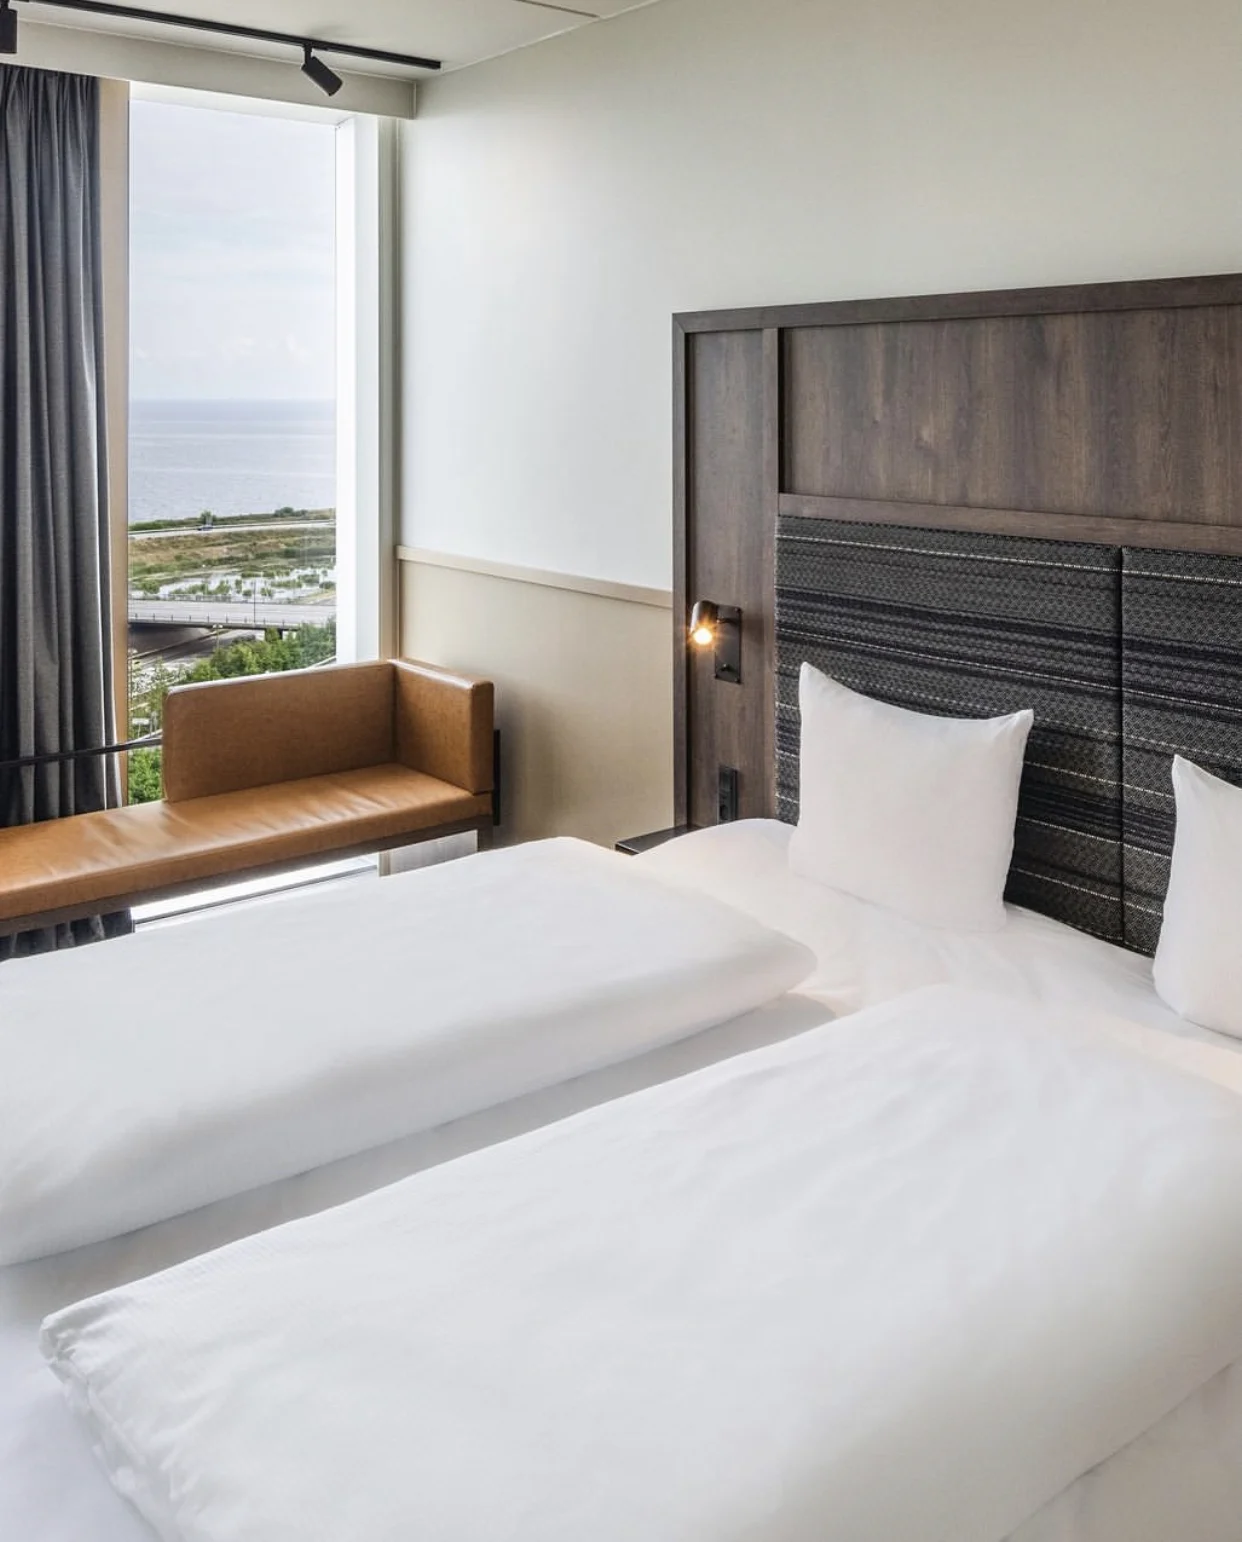 Hotellsäng med utsikt över strand och hav.